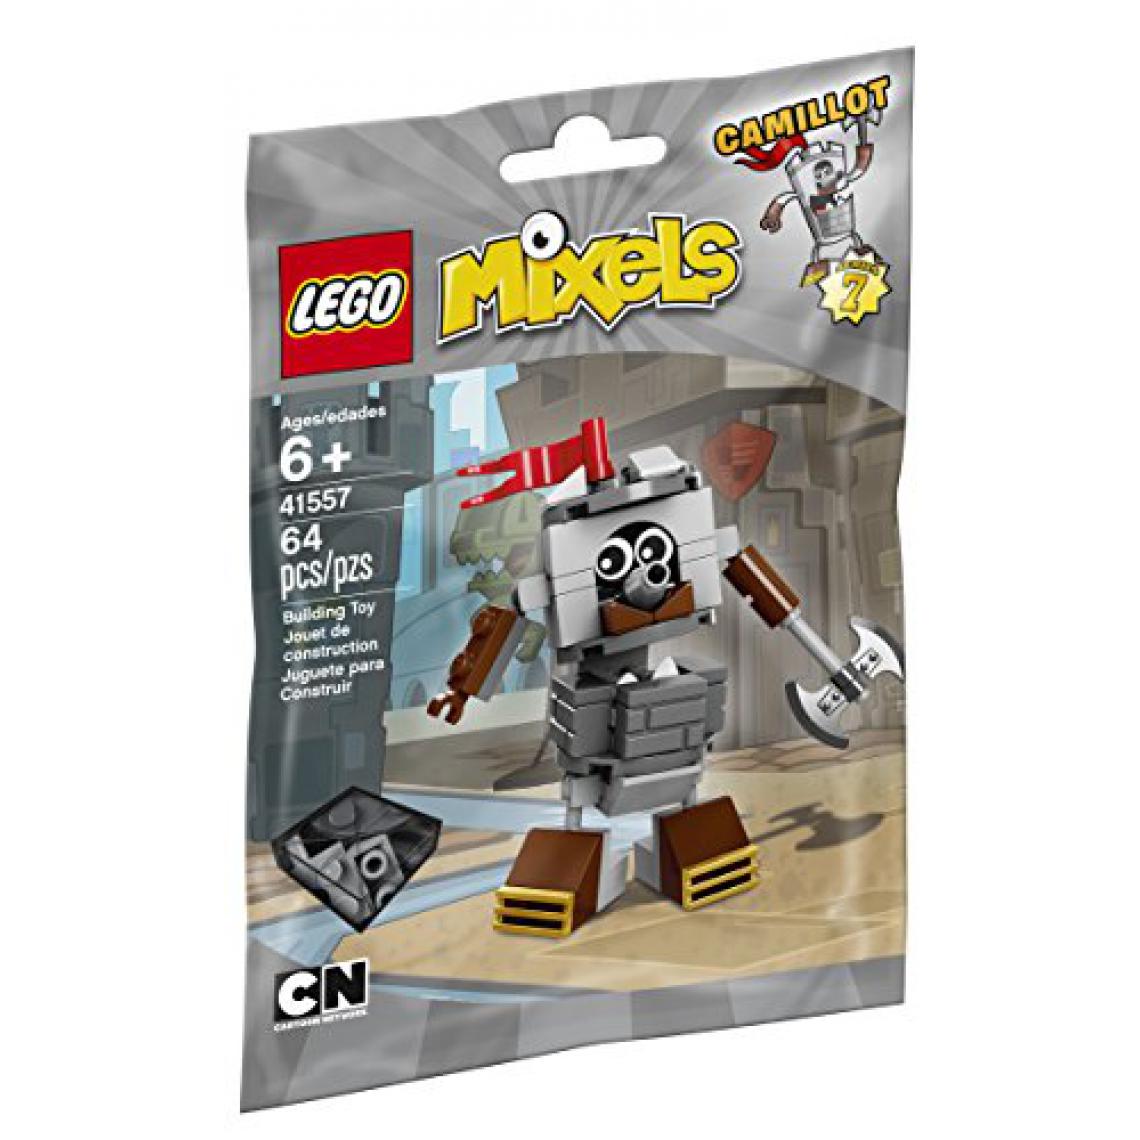 Lego - LEgO Mixels Mixel camillot 41557 Kit de construction - Briques et blocs